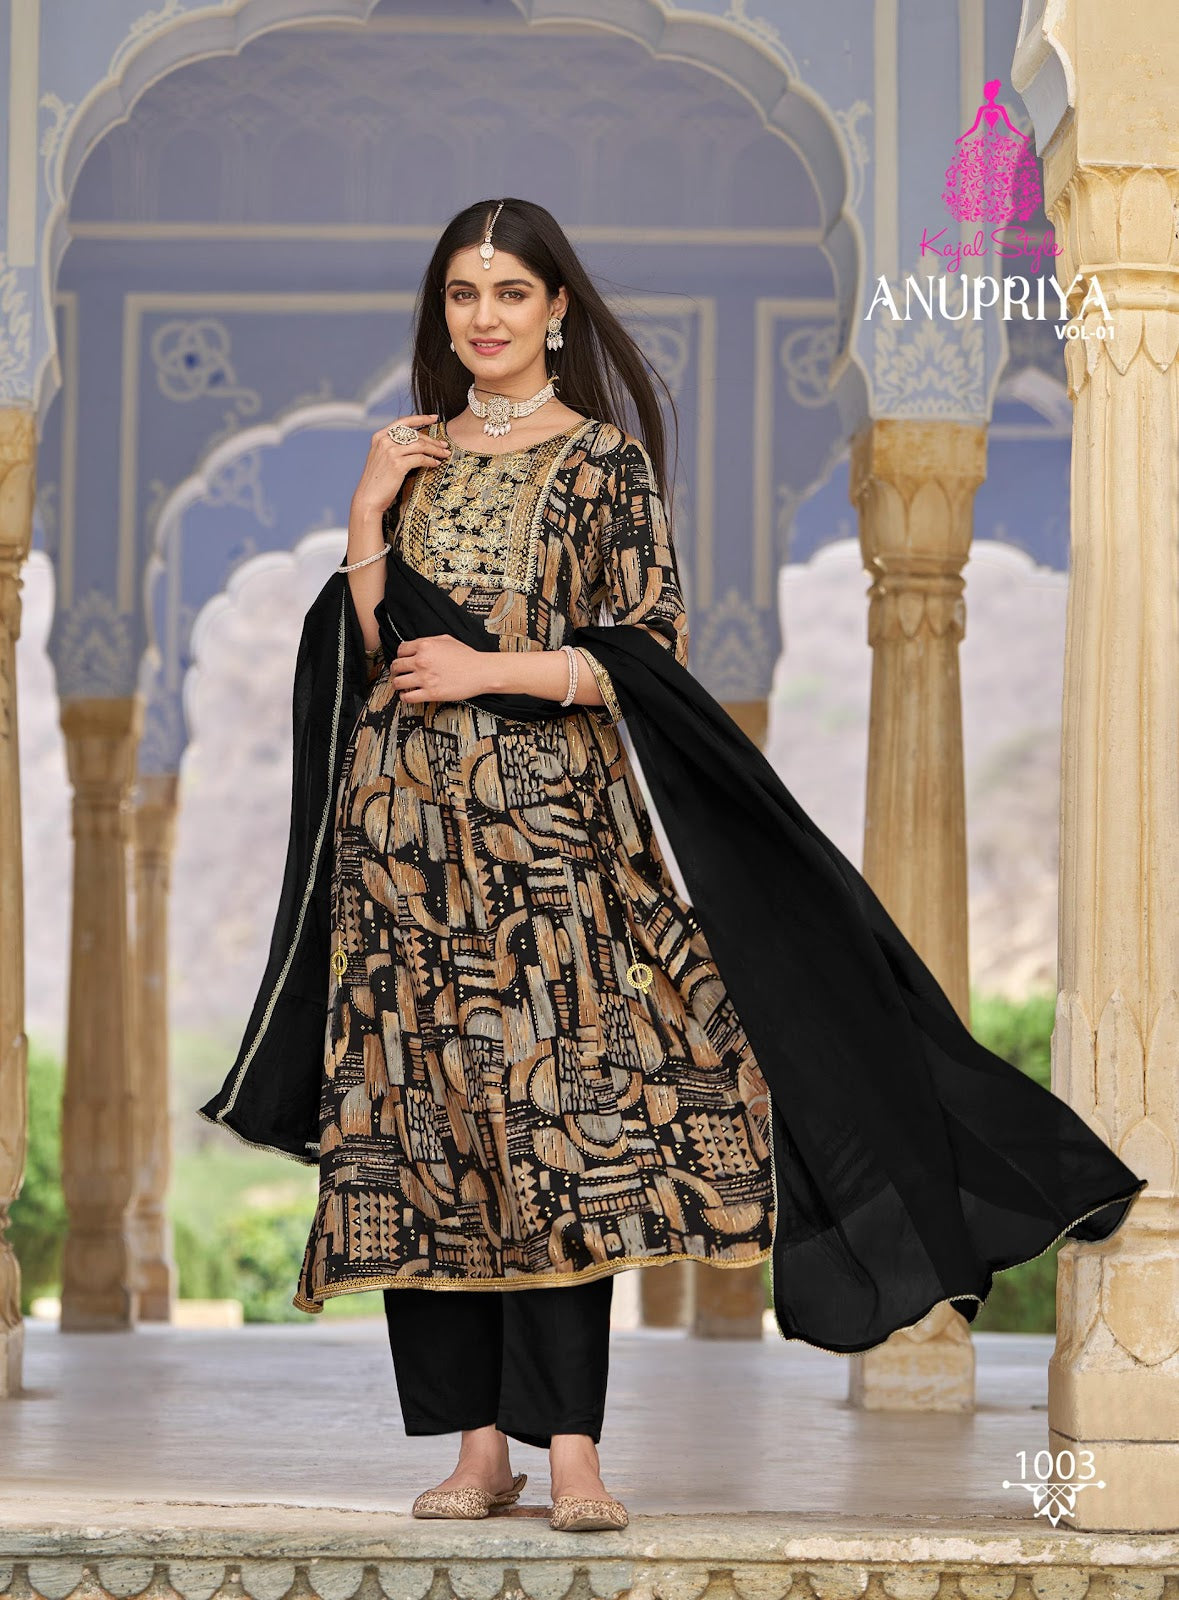 Anupriya Vol 1 Kajal Style Heavy Rayon Pant Style Suits Wholesaler